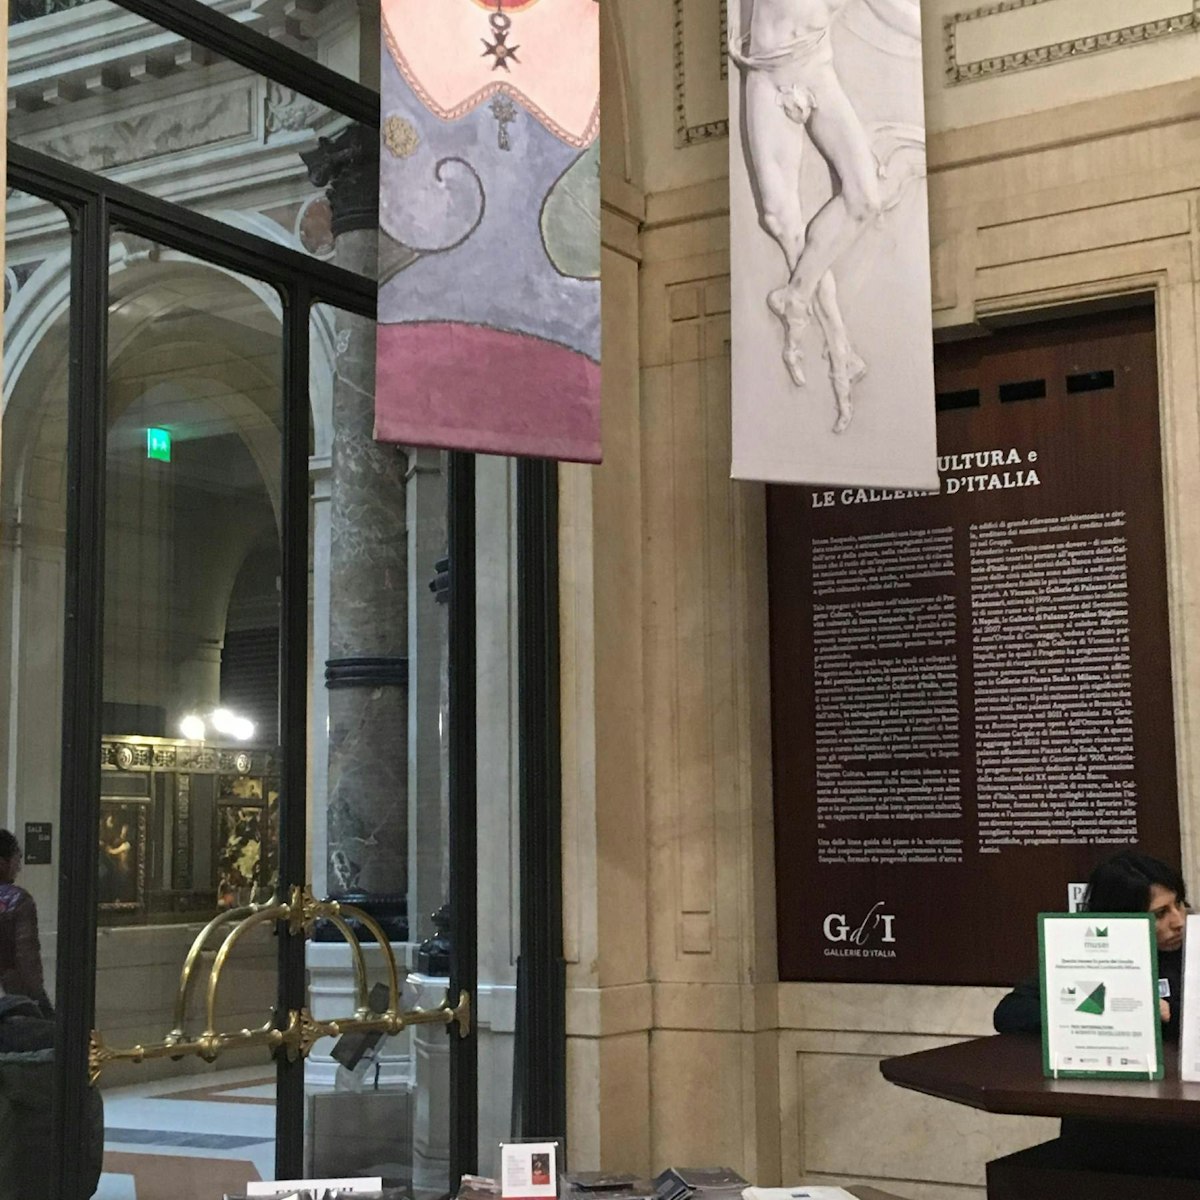 Inside the Galleria d’Italia